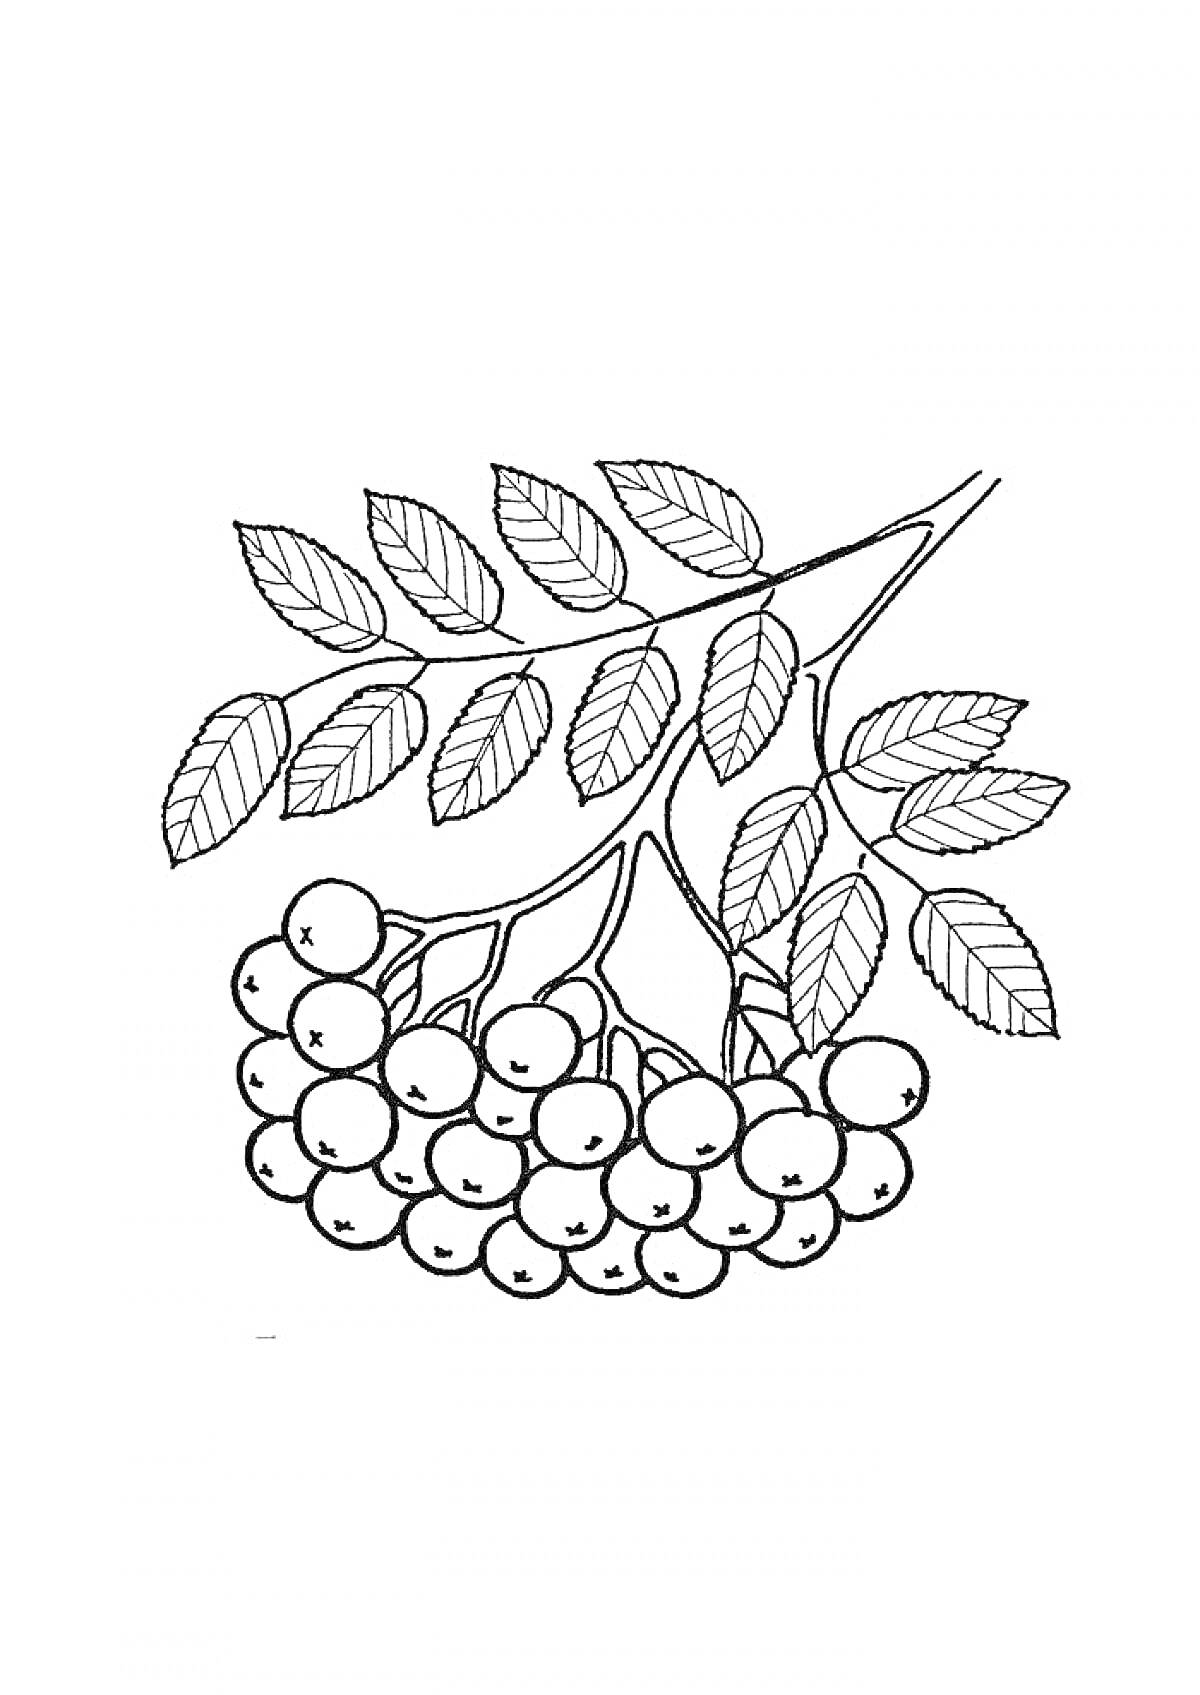 Ветка рябины с ягодами и листьями